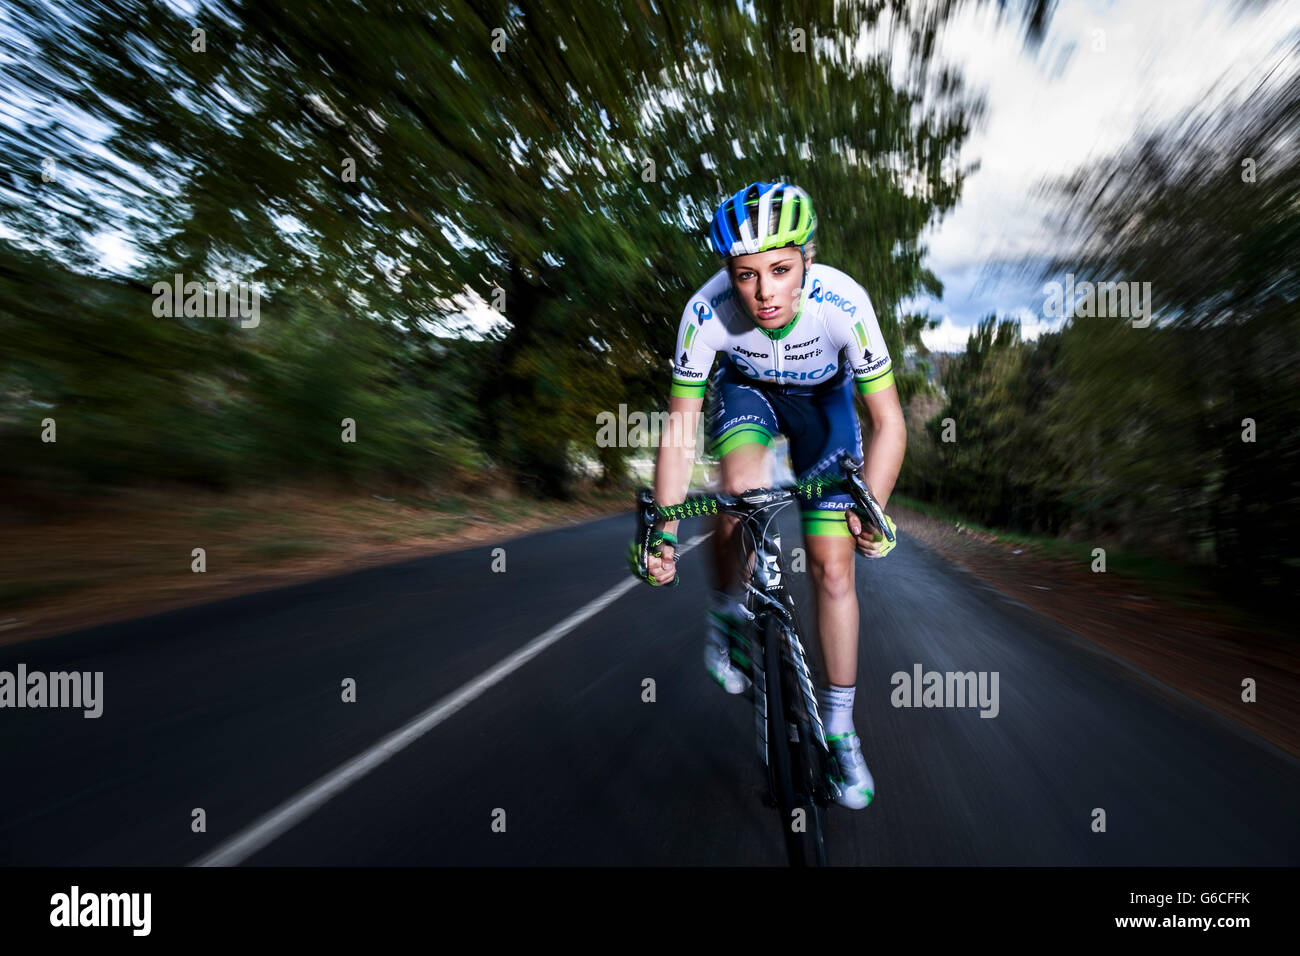 Campeón de ciclismo de Tasmania Macey Stewart en un viaje de formación en el país carreteras detrás de Sheffield, cerca del monte Roland,al noroeste de Tasmania. Foto de stock